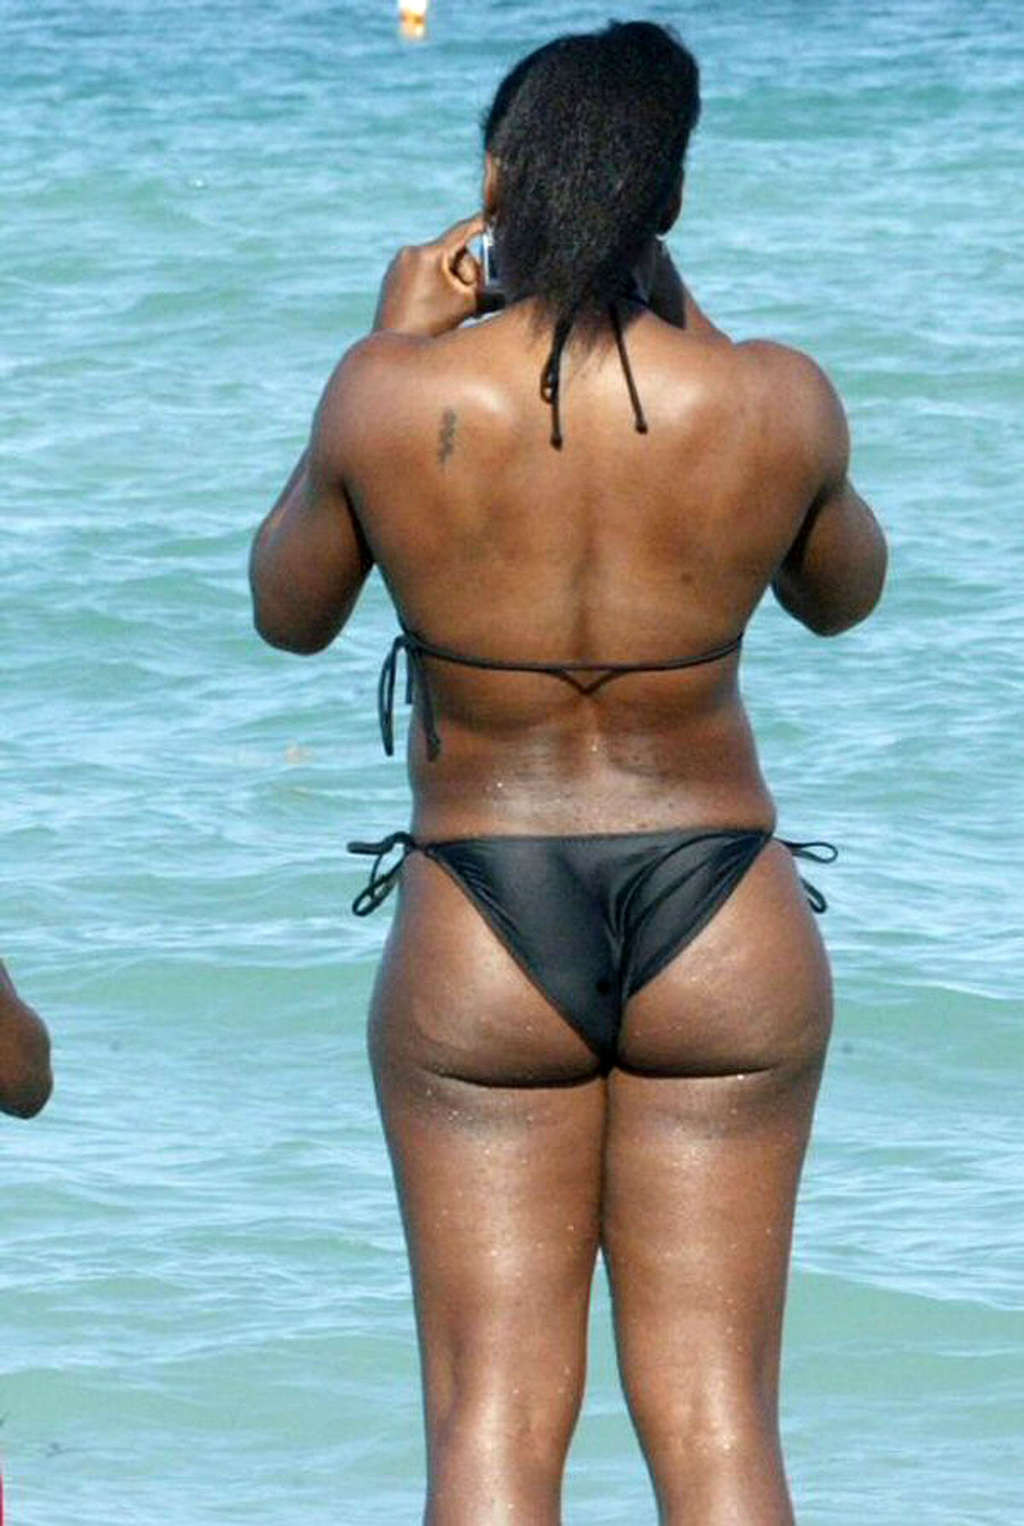 Serena williams montrant son cul sexy et ses jolis seins sur la plage
 #75376794